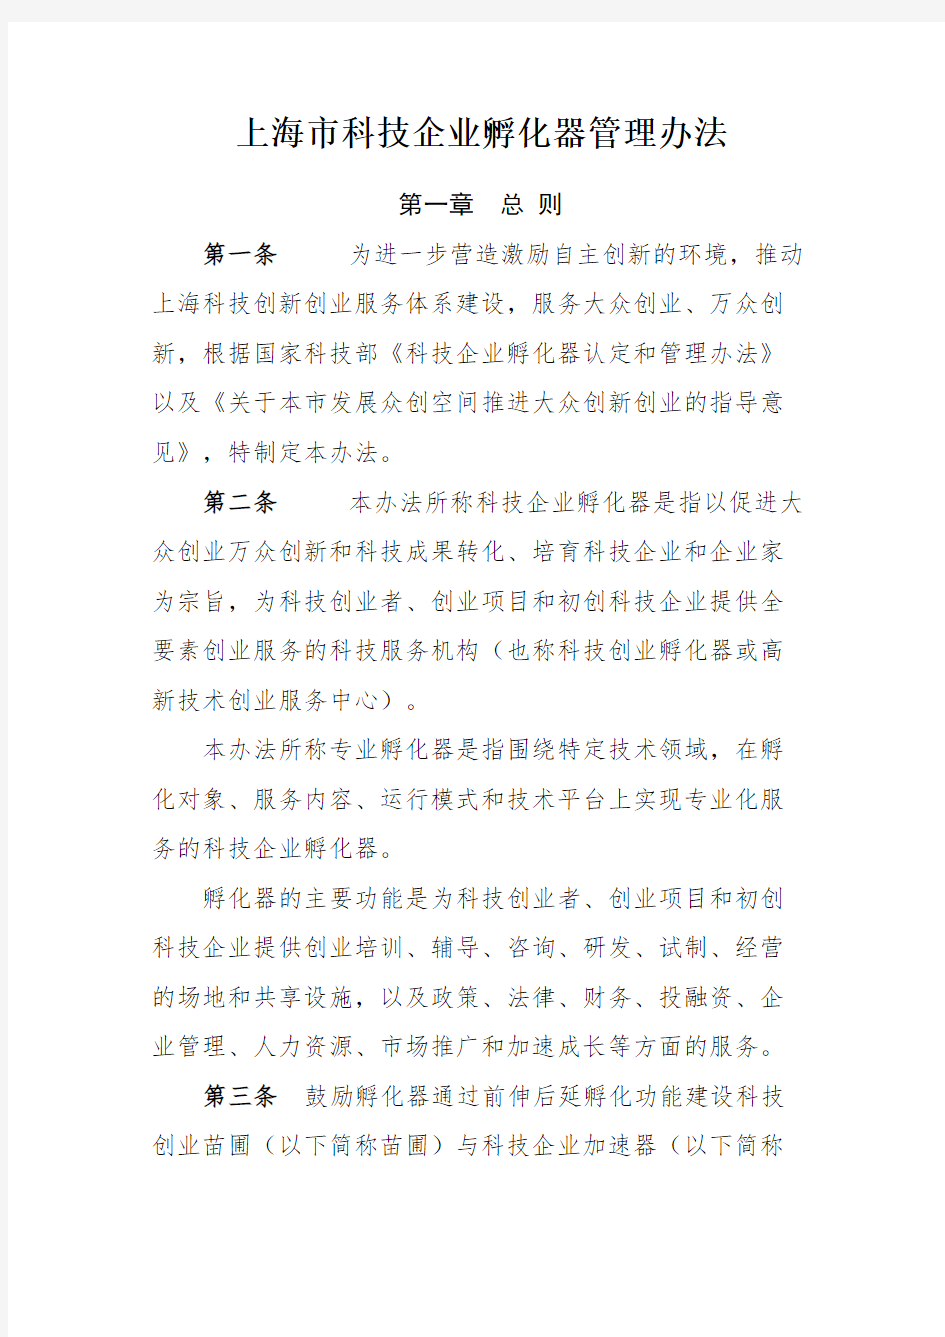 上海科技企业孵化器管理规定